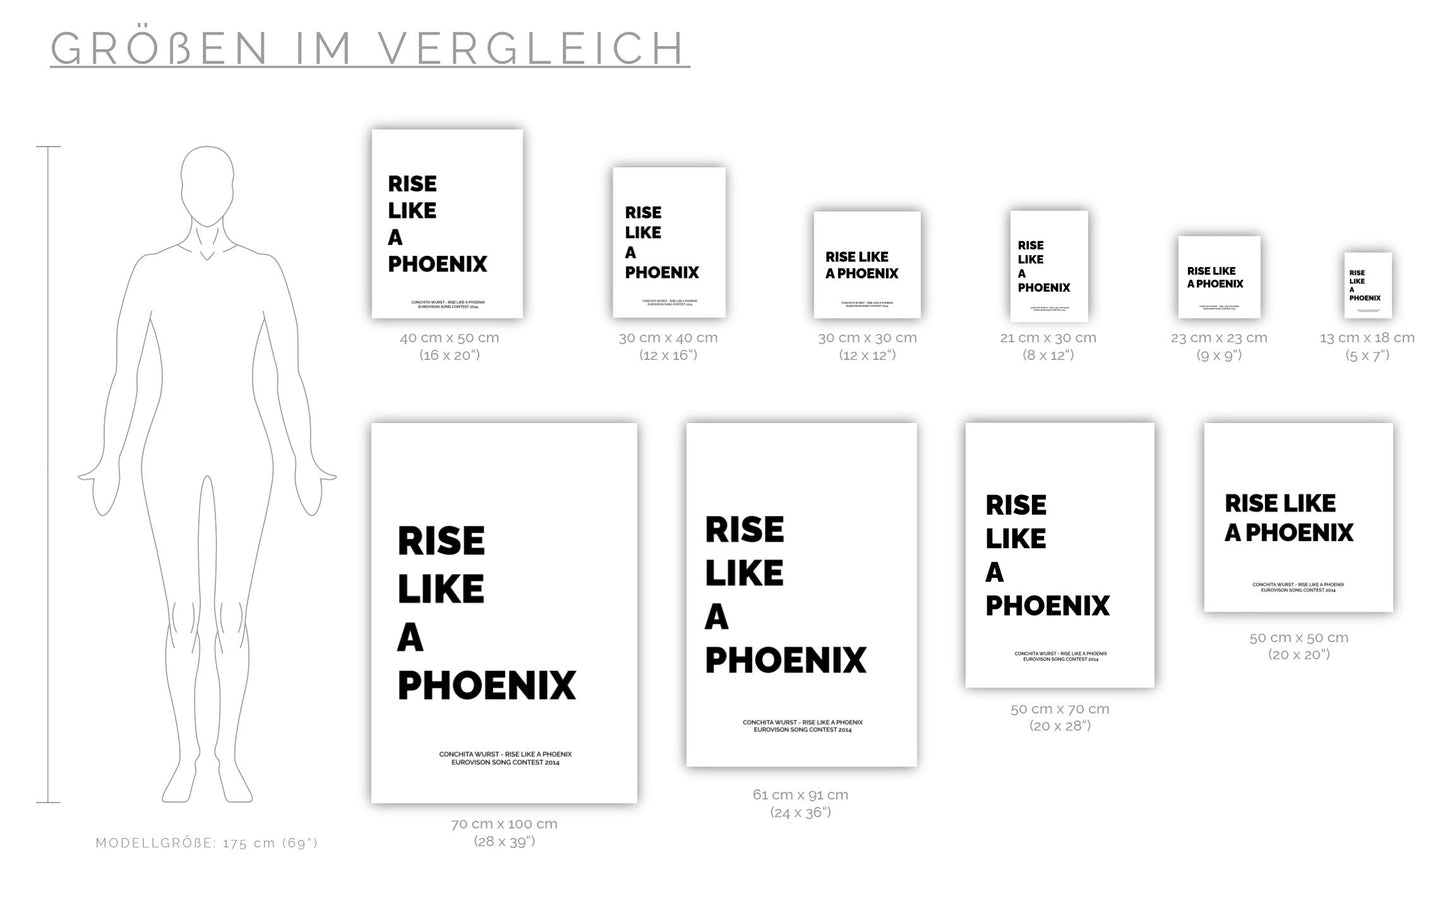 Poster Conchita Wurst - Rise Like A Phoenix (2014)